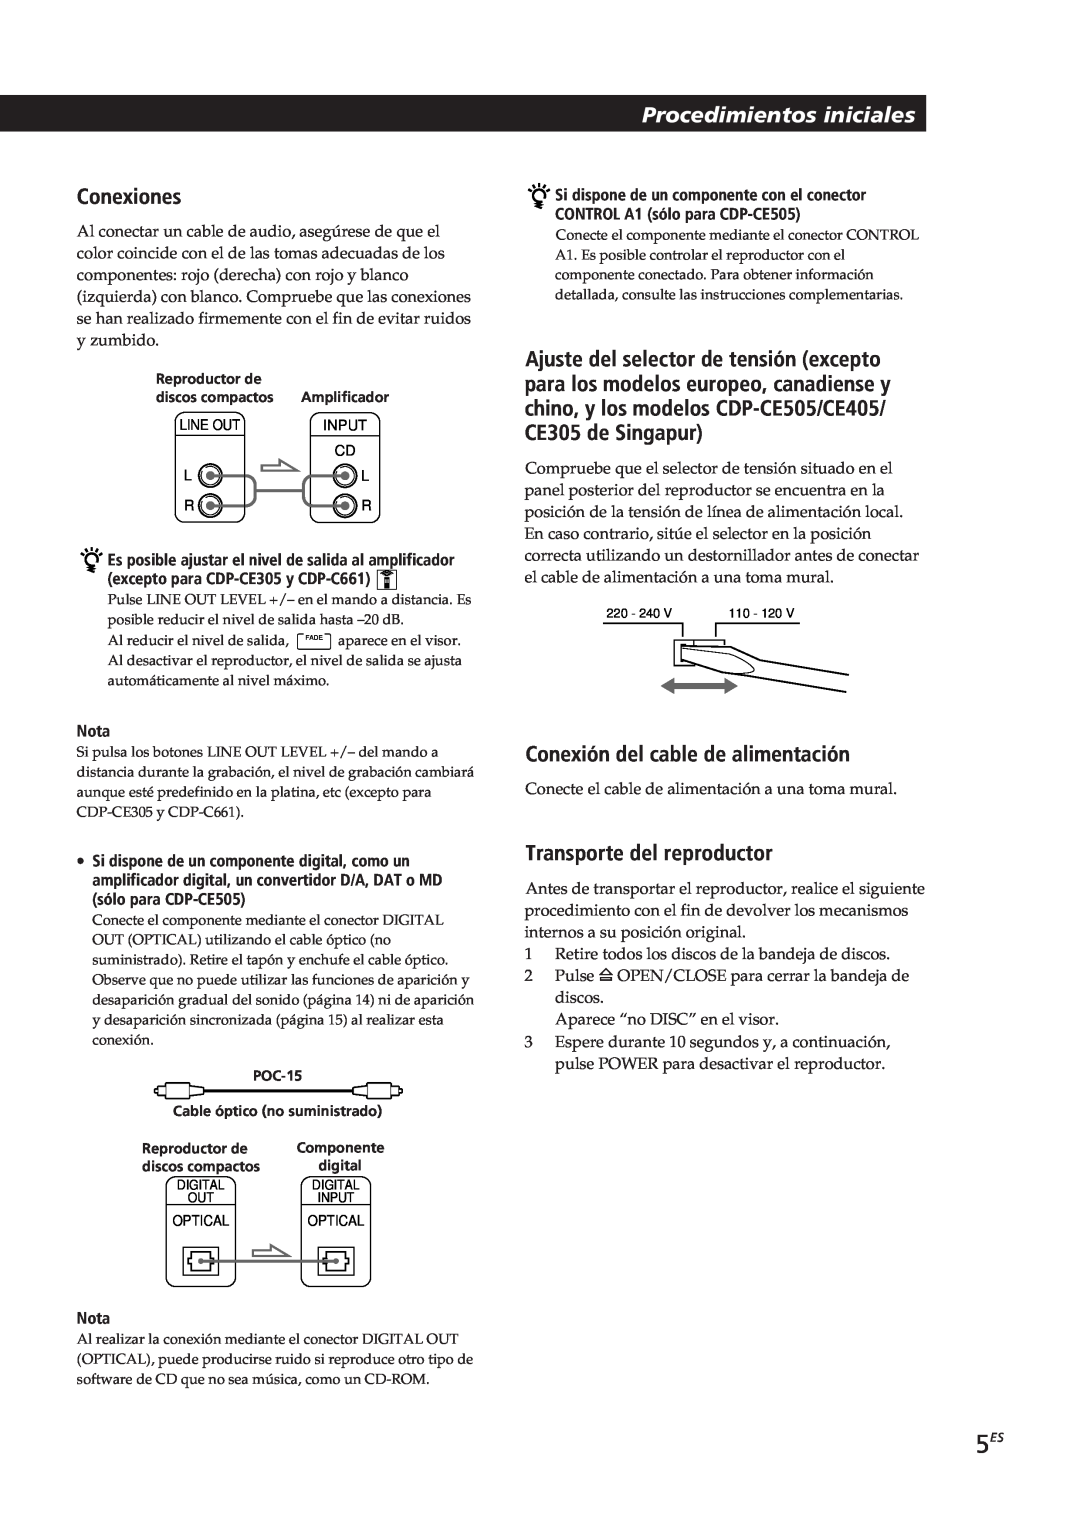 Sony CDP-C661 Procedimientos iniciales, Conexiones, Conexión del cable de alimentación, Transporte del reproductor, Nota 